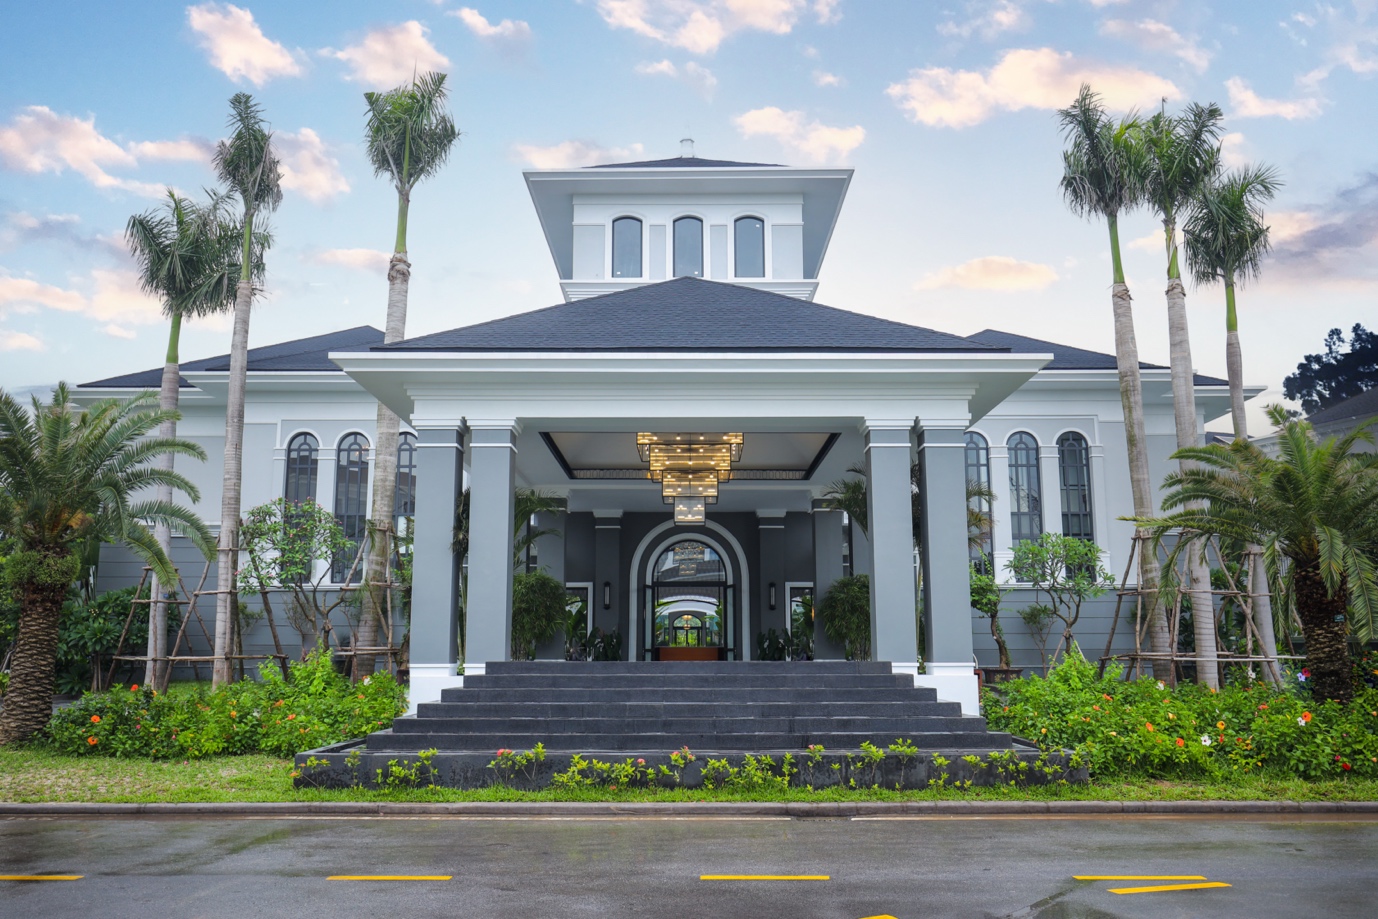 Grand Bay Halong Villas: Bến đỗ mới của giới siêu giàu Quảng Ninh - Ảnh 1.